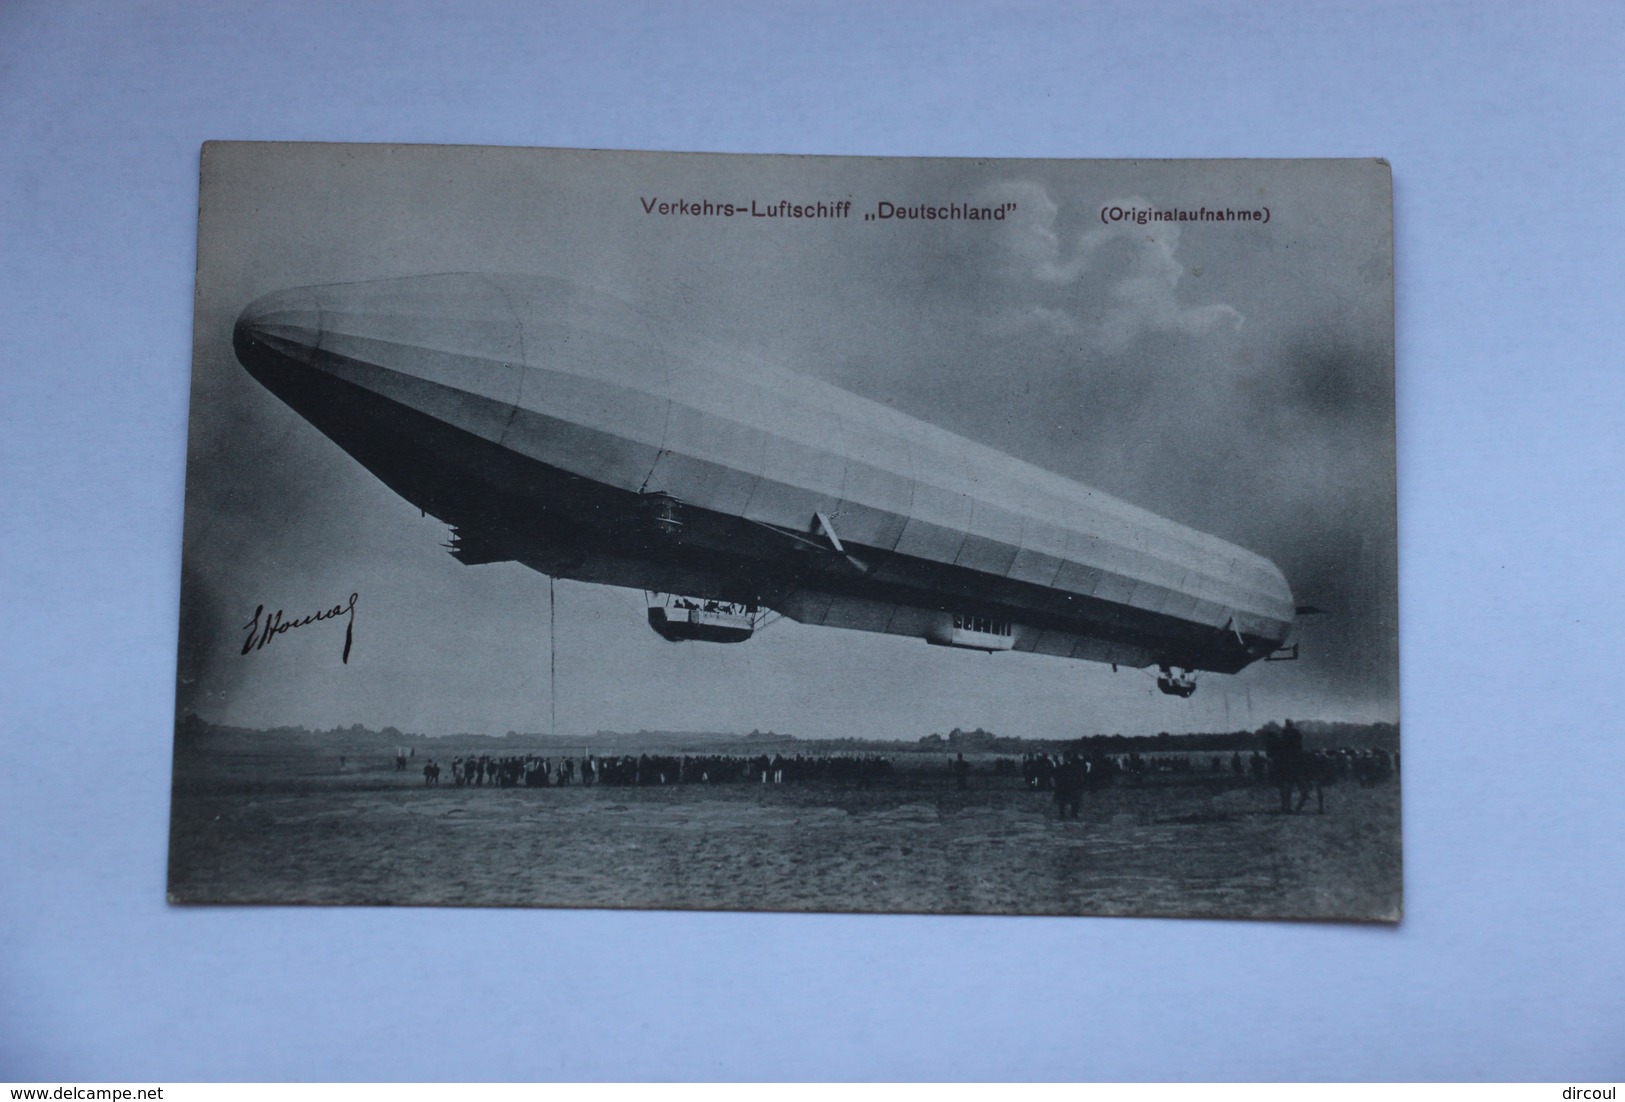 39398  -  Zeppelin  -  Verkehrs-Luftschiff   Deutschland   -originalaufnahme  -  2 - Zeppeline